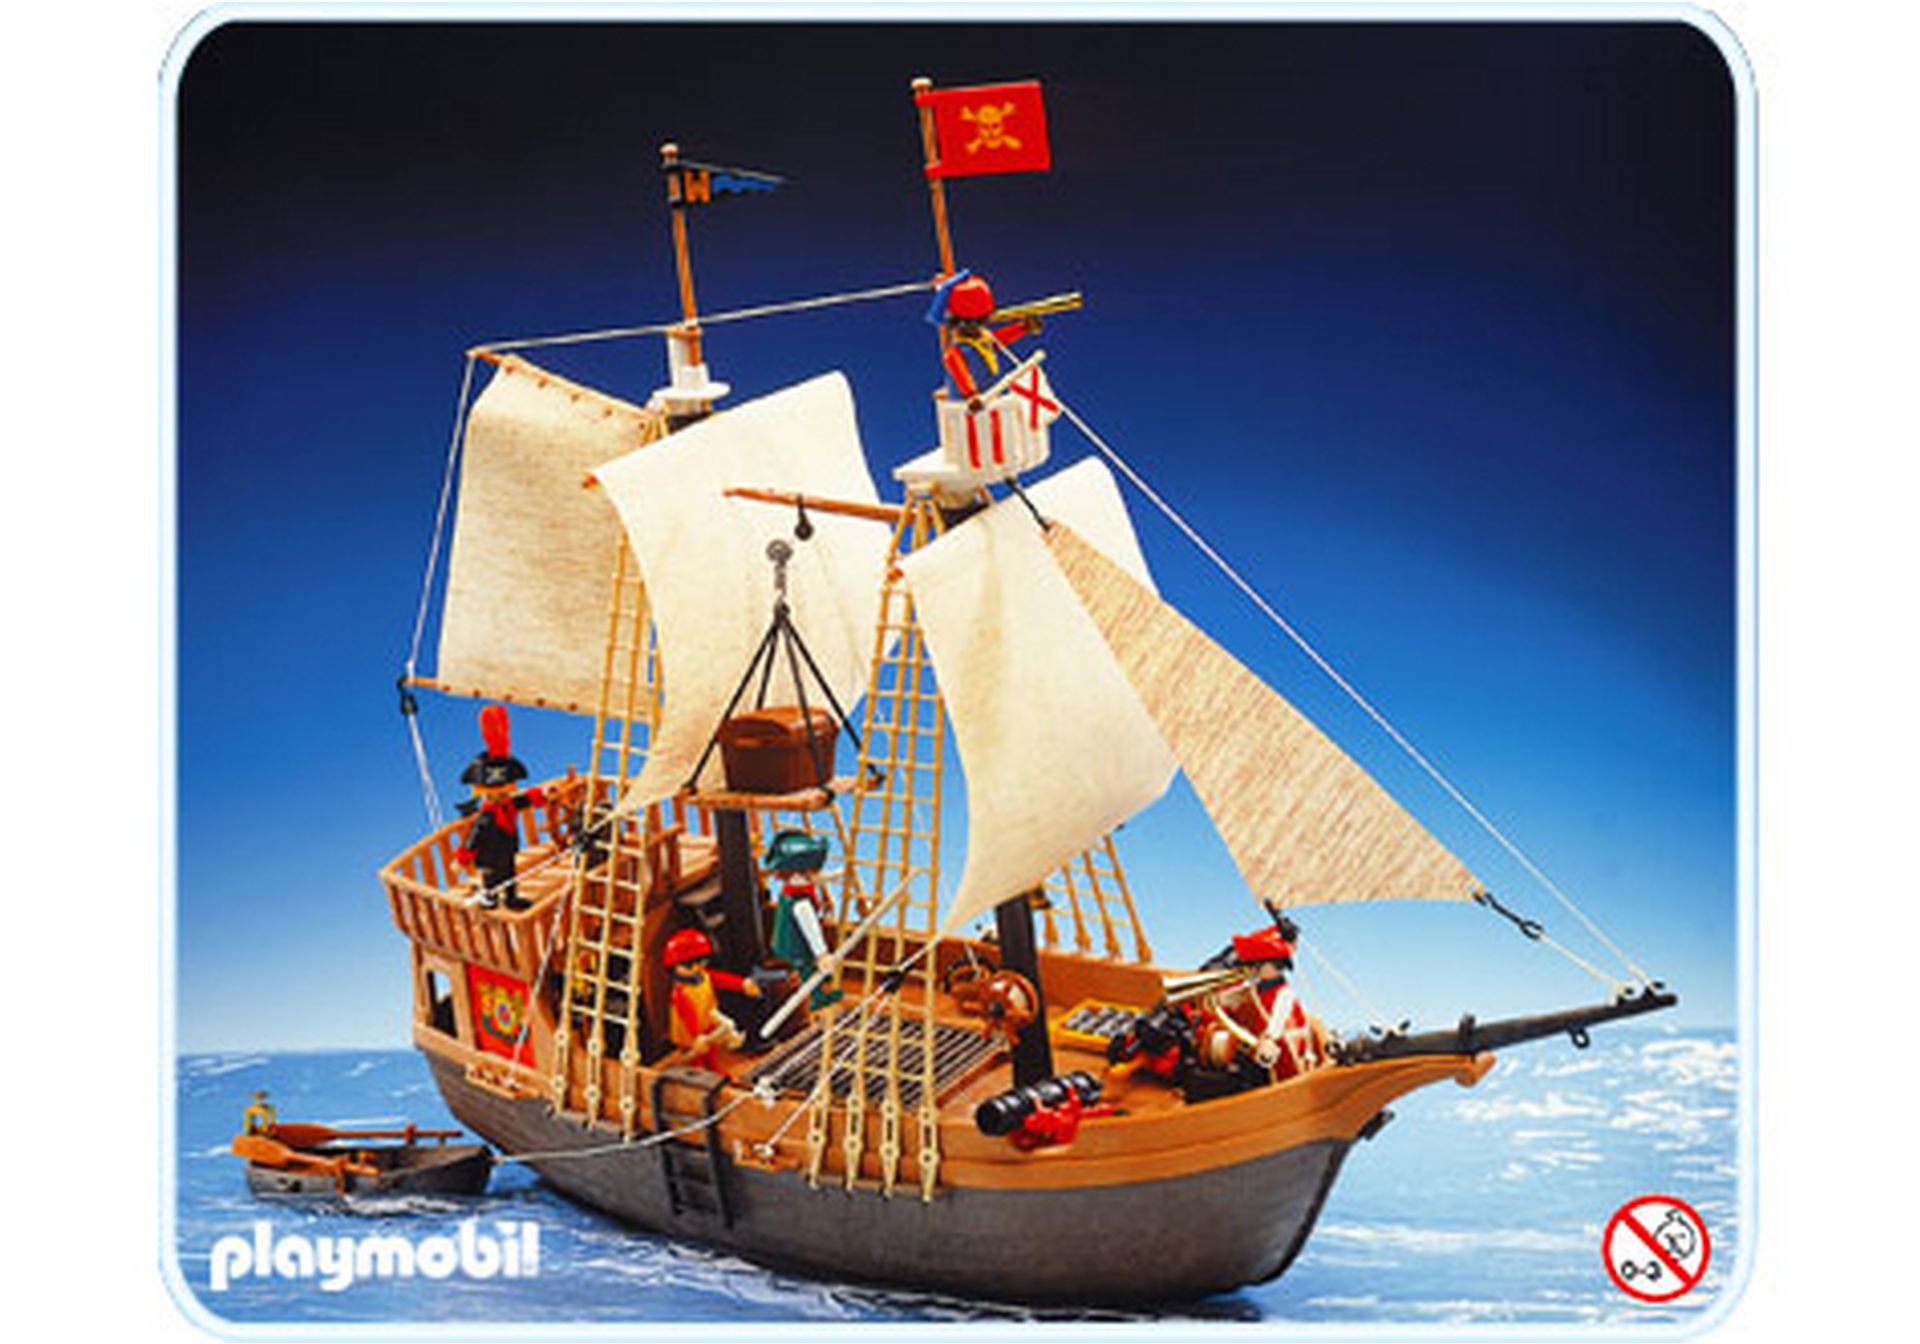 Playmobil Mastkorb Krähennest braun  altes Klicky Piratenschiff 3750 3550 